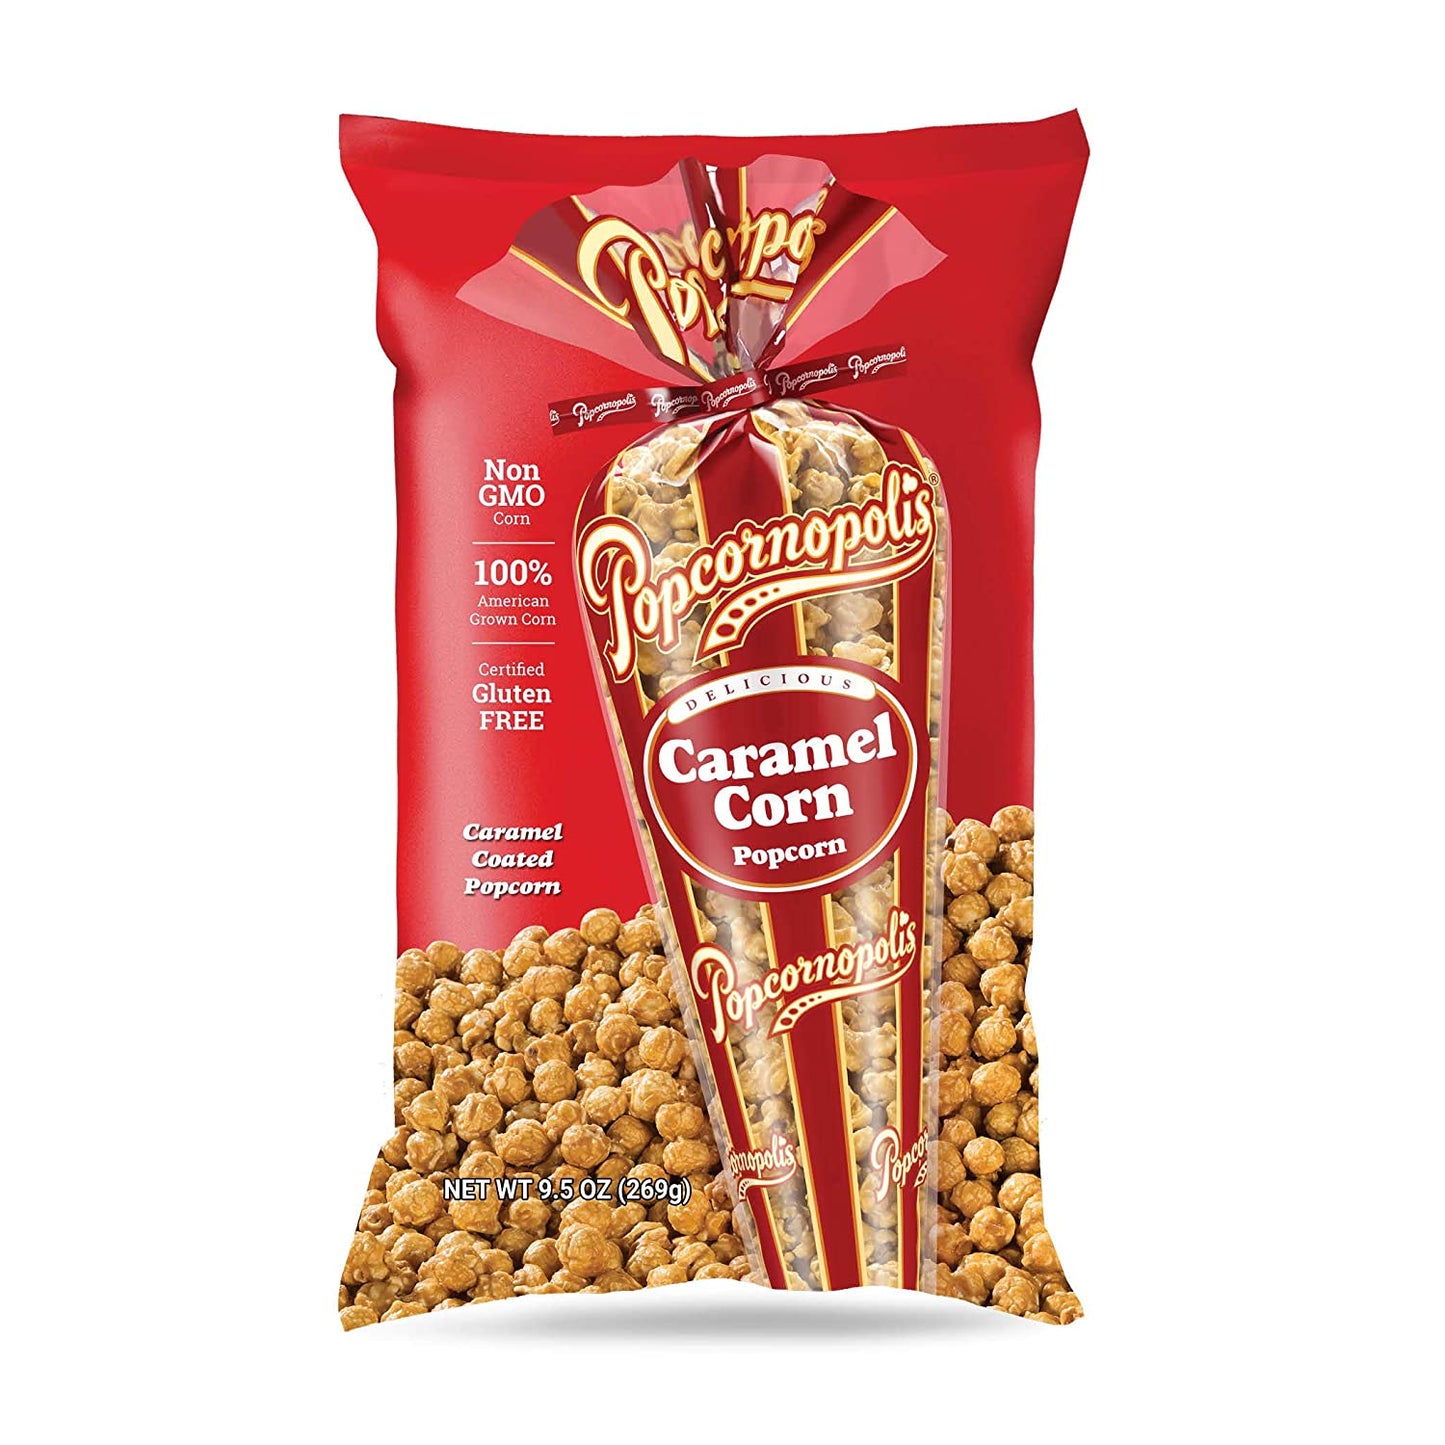 Popcornopolis Gourmet Caramel Corn Popcorn, Popped Popcorn Snack Bags 9.5 Oz